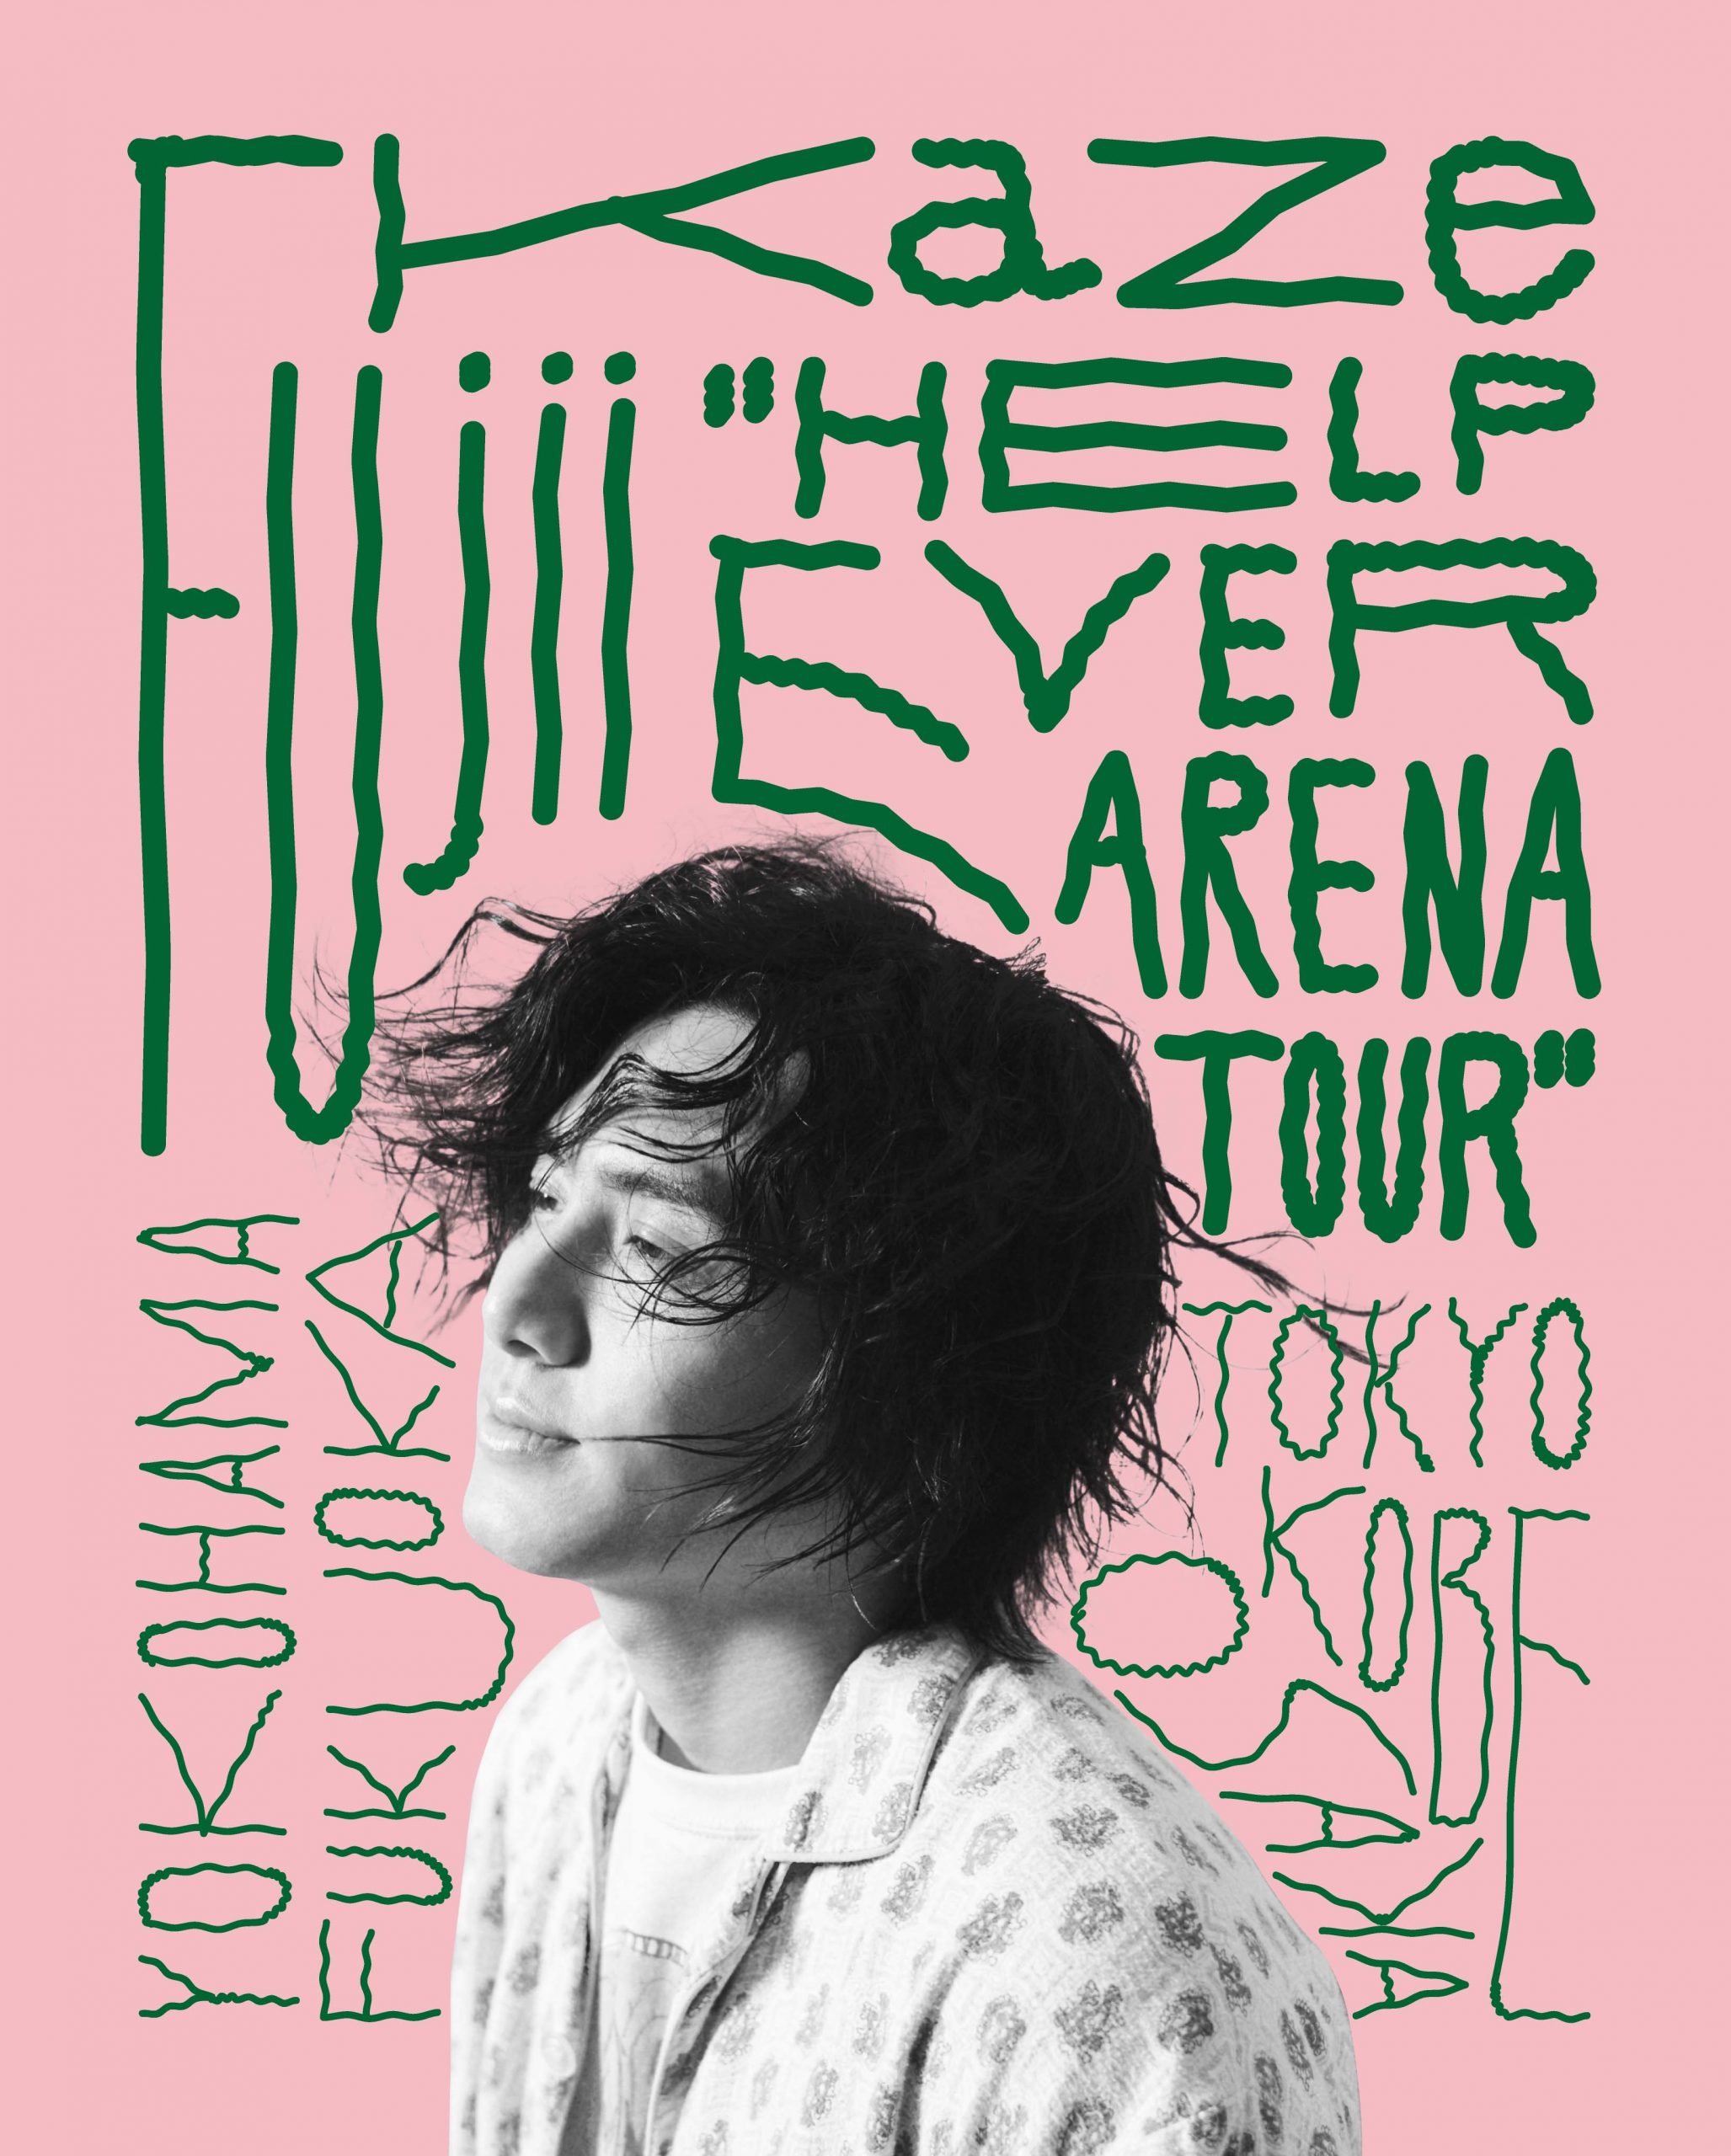 Fujii Kaze "HELP EVER ARENA TOUR"